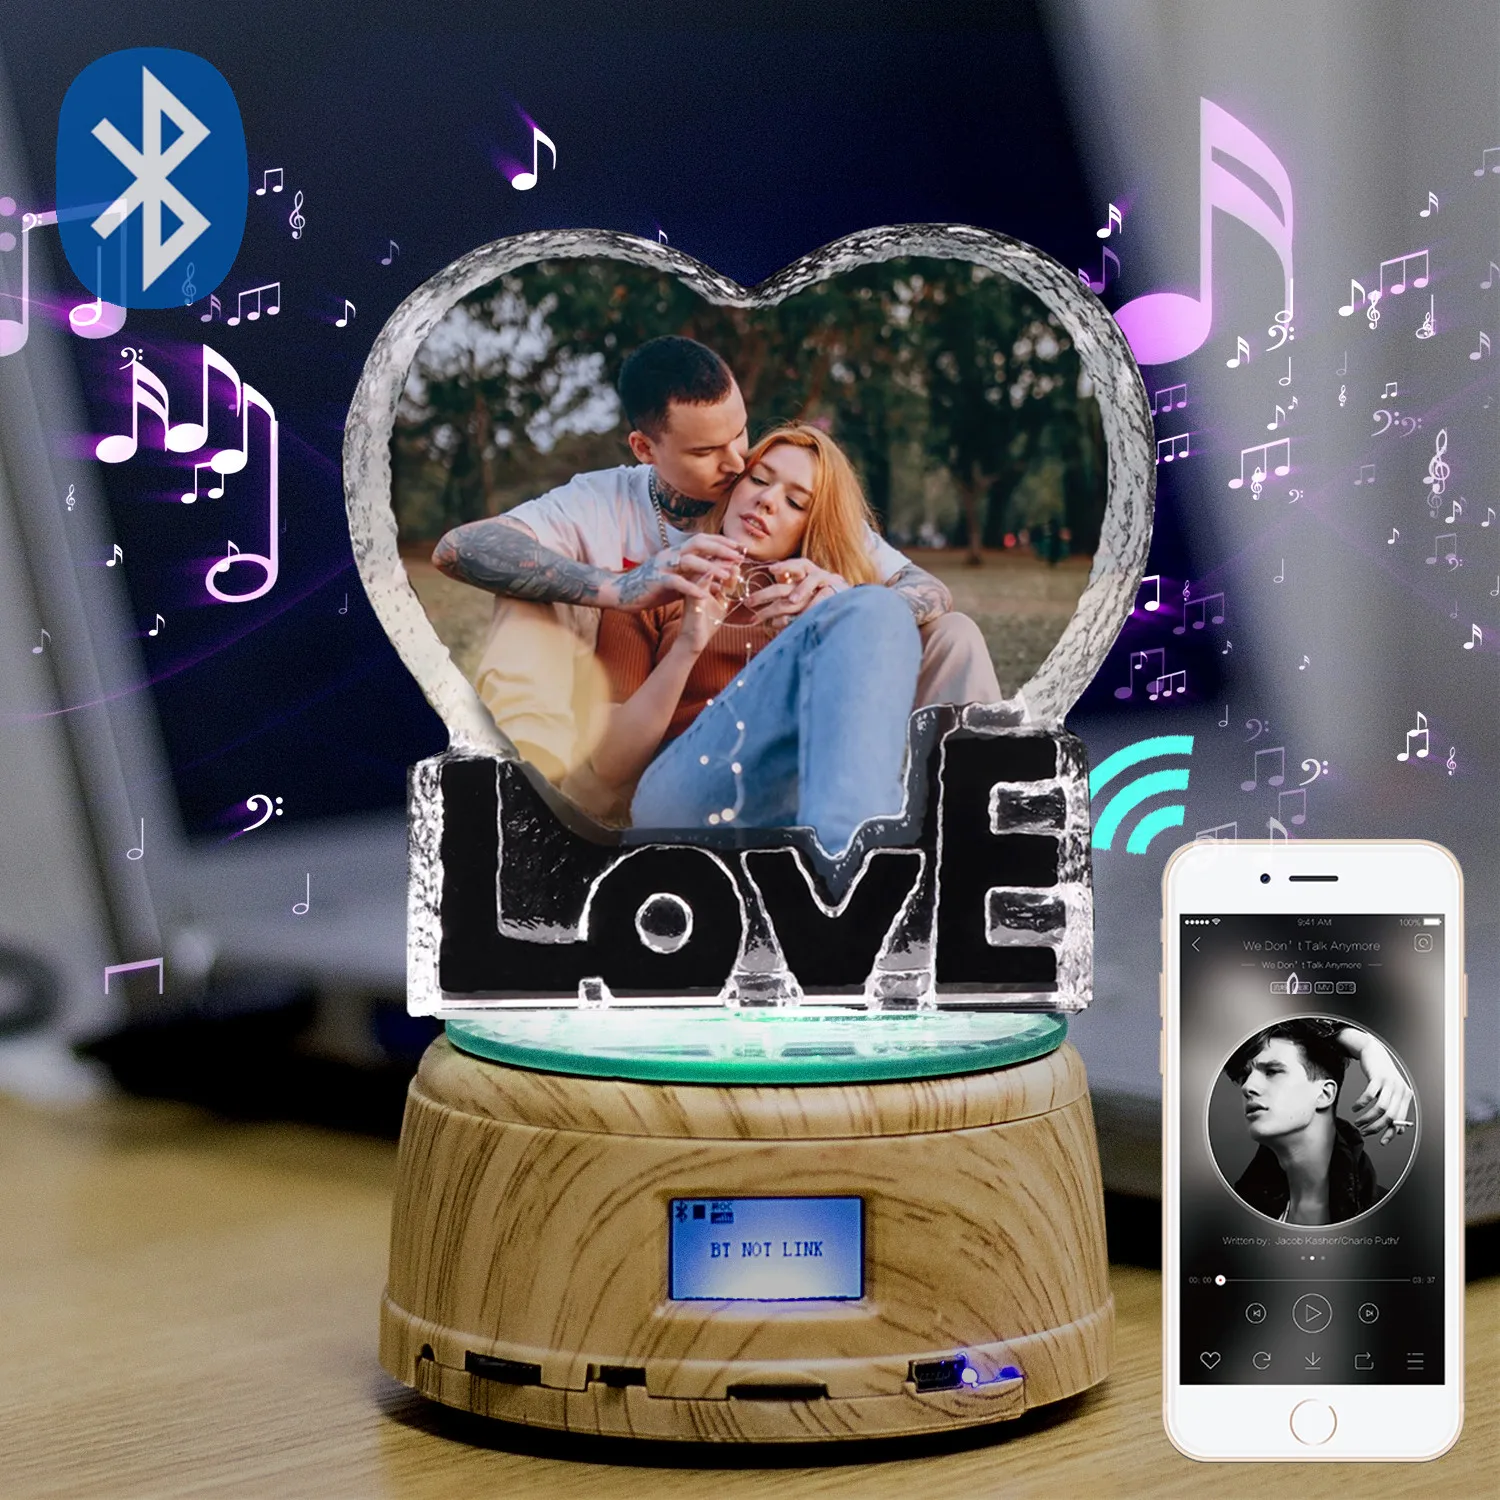 Изготовленный На Заказ K9 любовь с украшением в виде кристаллов Цвет фоторамка светодиодный ночной Светильник MP3 Bluetooth музыкальная шкатулка вращающиеся украшения Показать проигрыватель сувенир для подарка